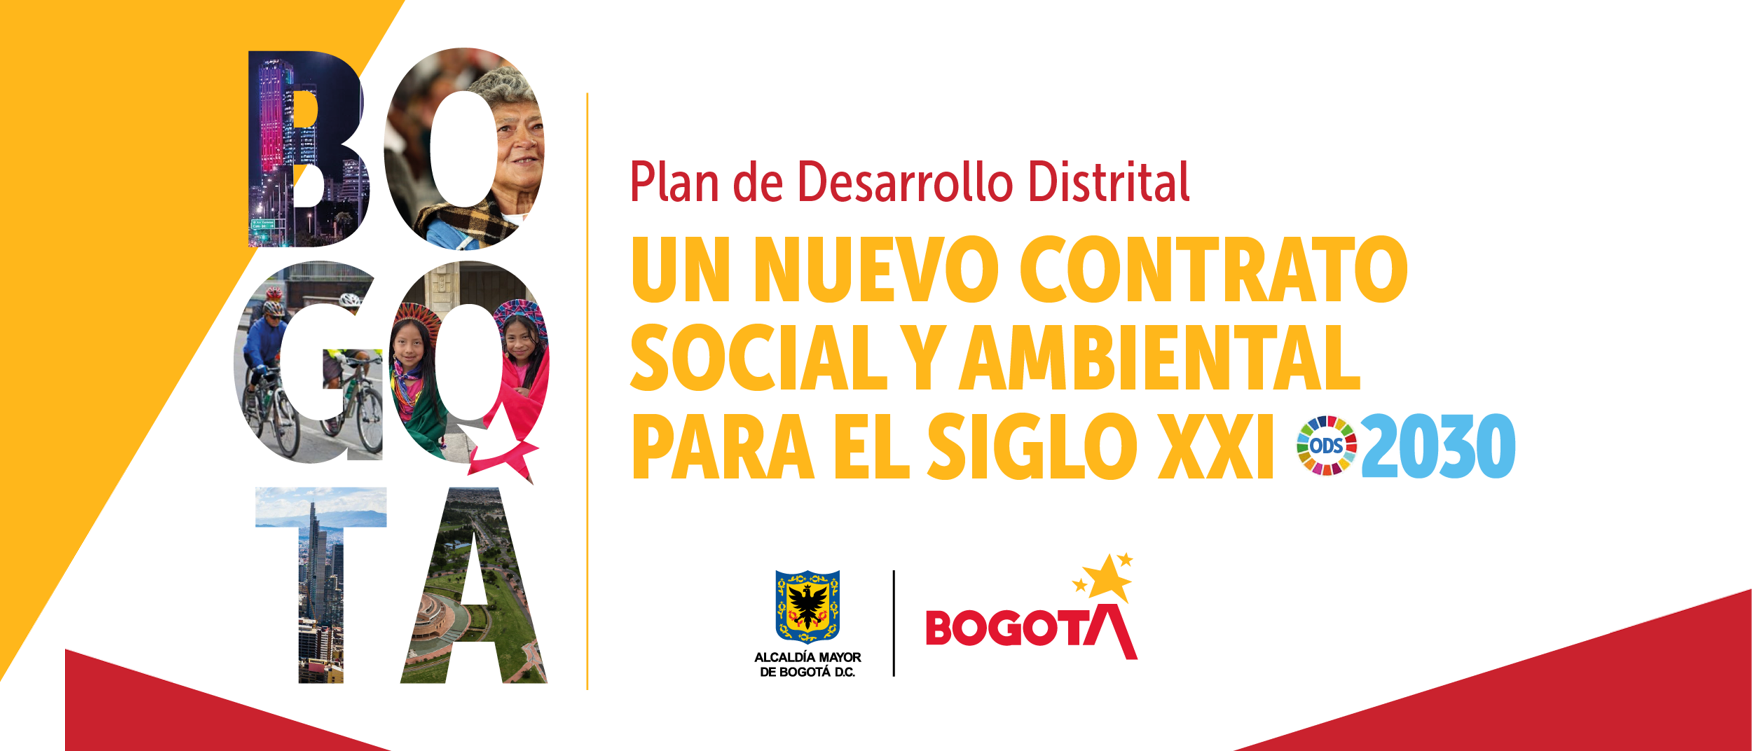 Un nuevo contrato social y ambiental para la Bogotá del Siglo XXI